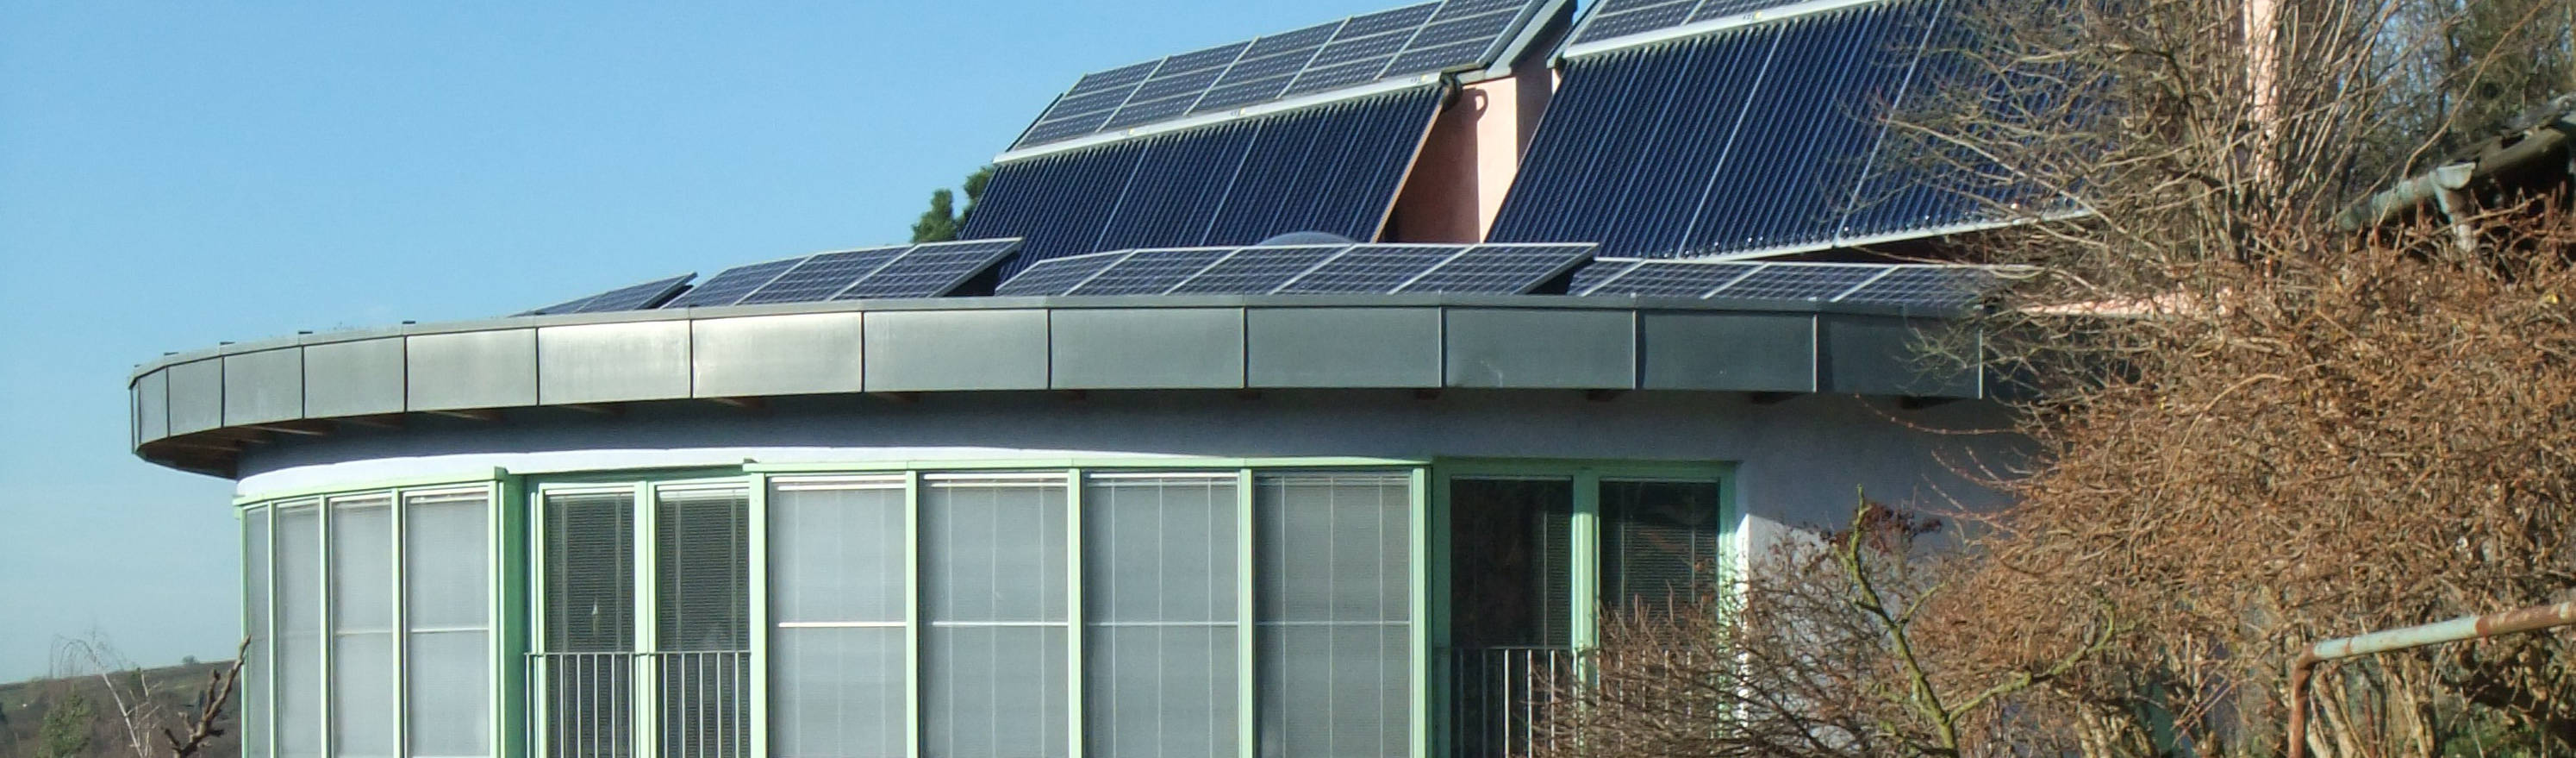 Büro für Solar-Architektur